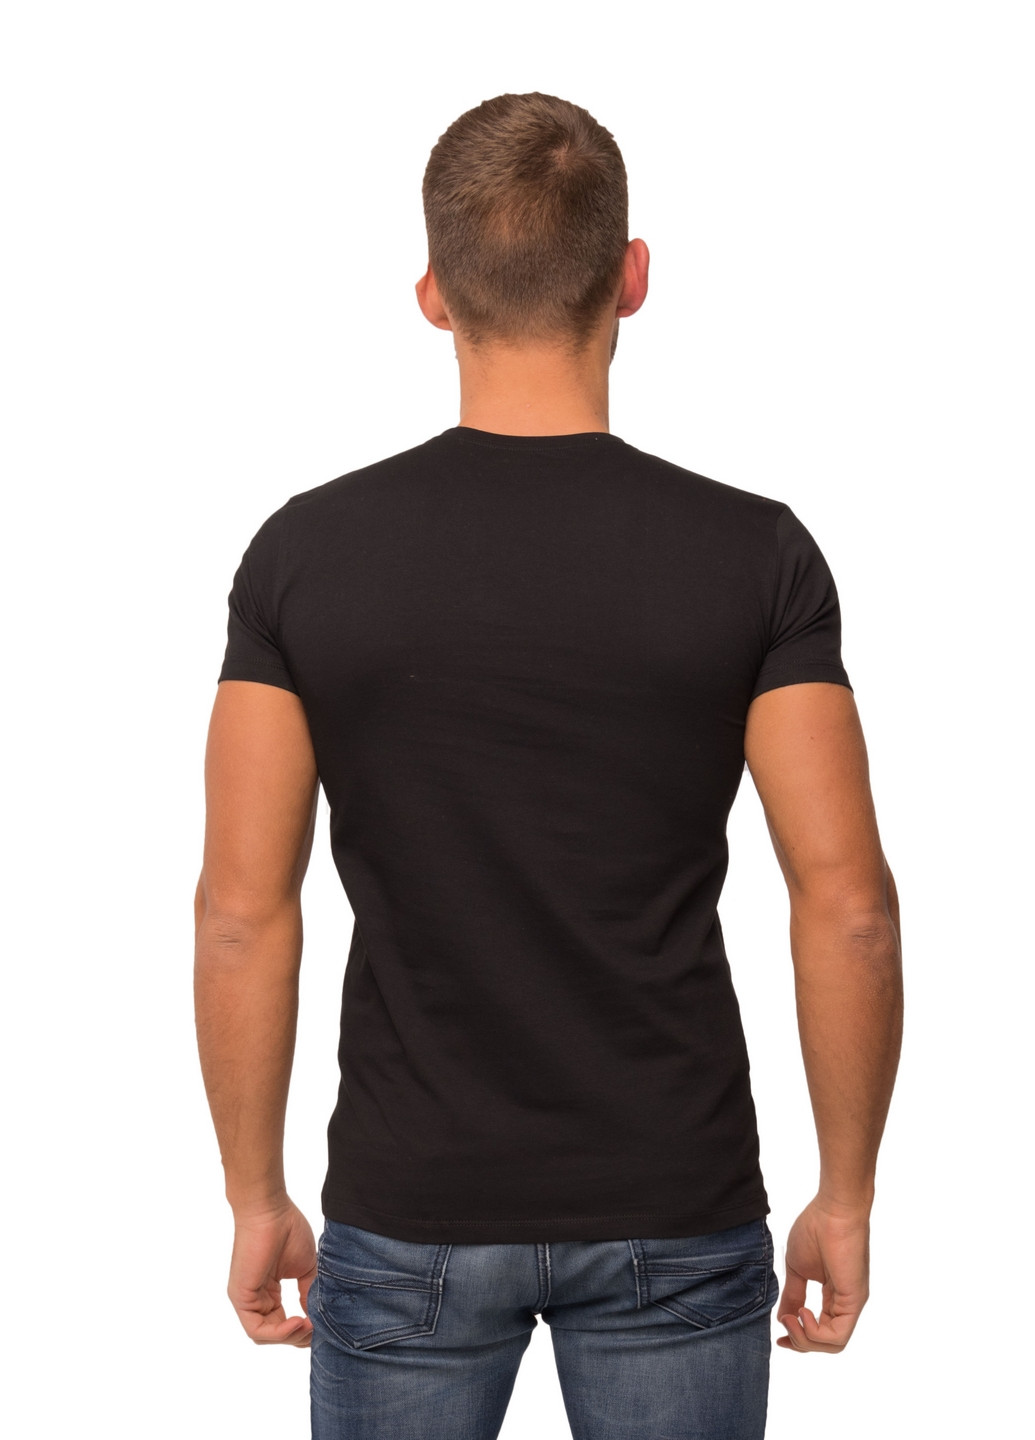 Черная футболка мужская Наталюкс 12-1338